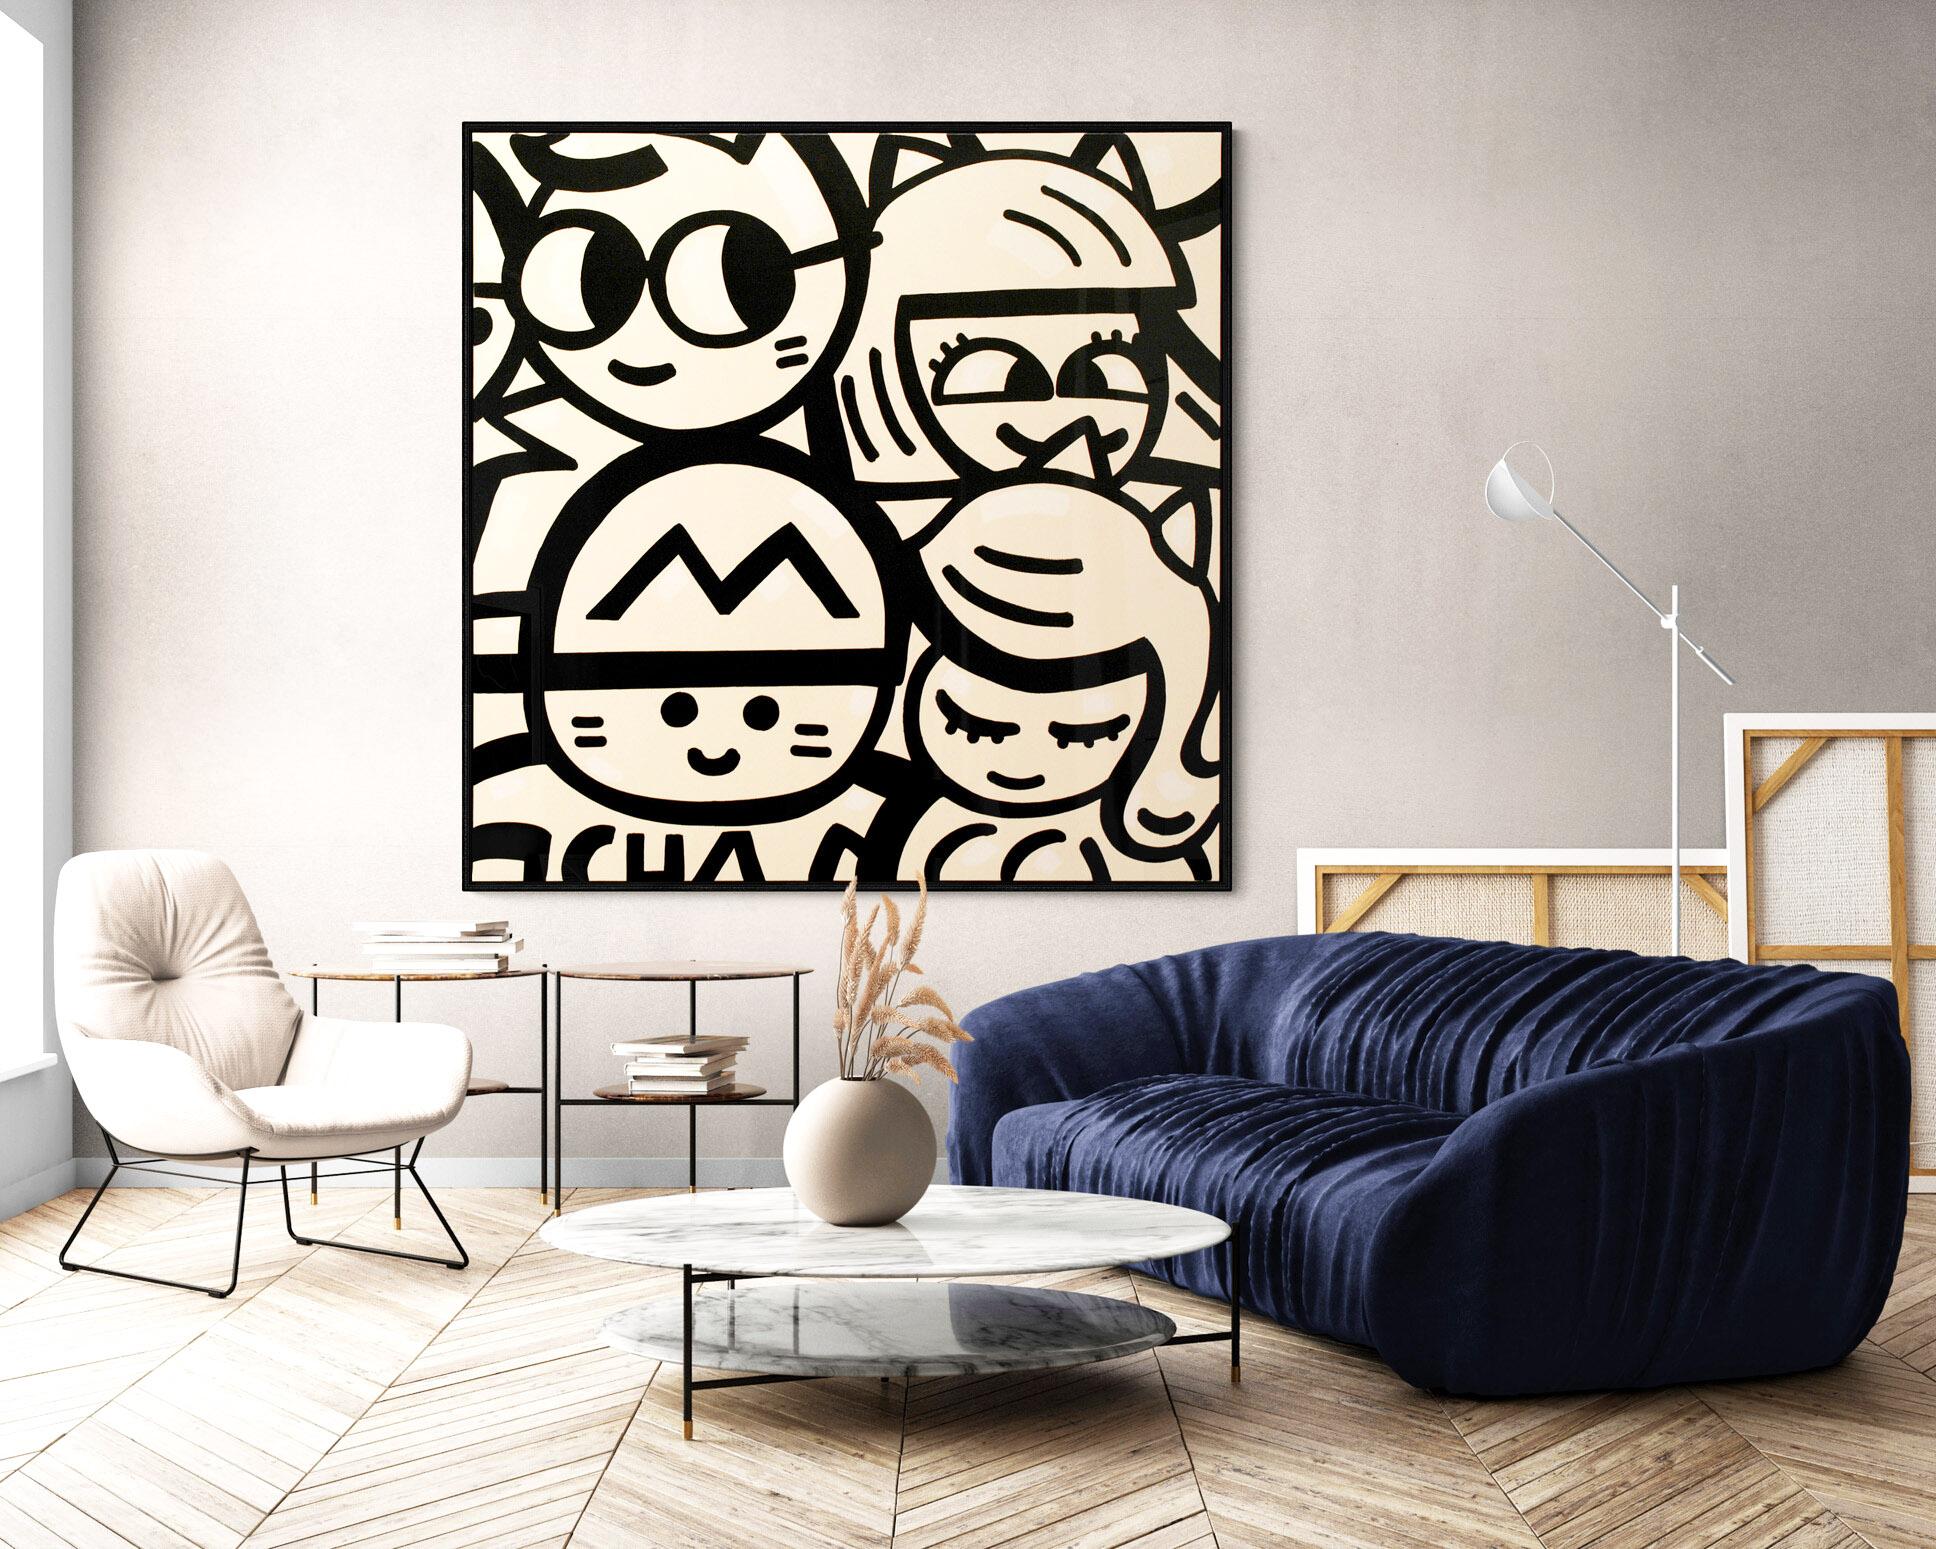 Acryl und Spray auf Canvas
150 x 150 x 3 cm (59,1 x 59,1 x 1,2 Zoll)
Einzigartige Kunstwerke
Schwarzer Holzrahmen (155 x 155 x 5 cm) - (61 x 61 x 2 Zoll)
Signiert von der Künstlerin
Echtheitszertifikat